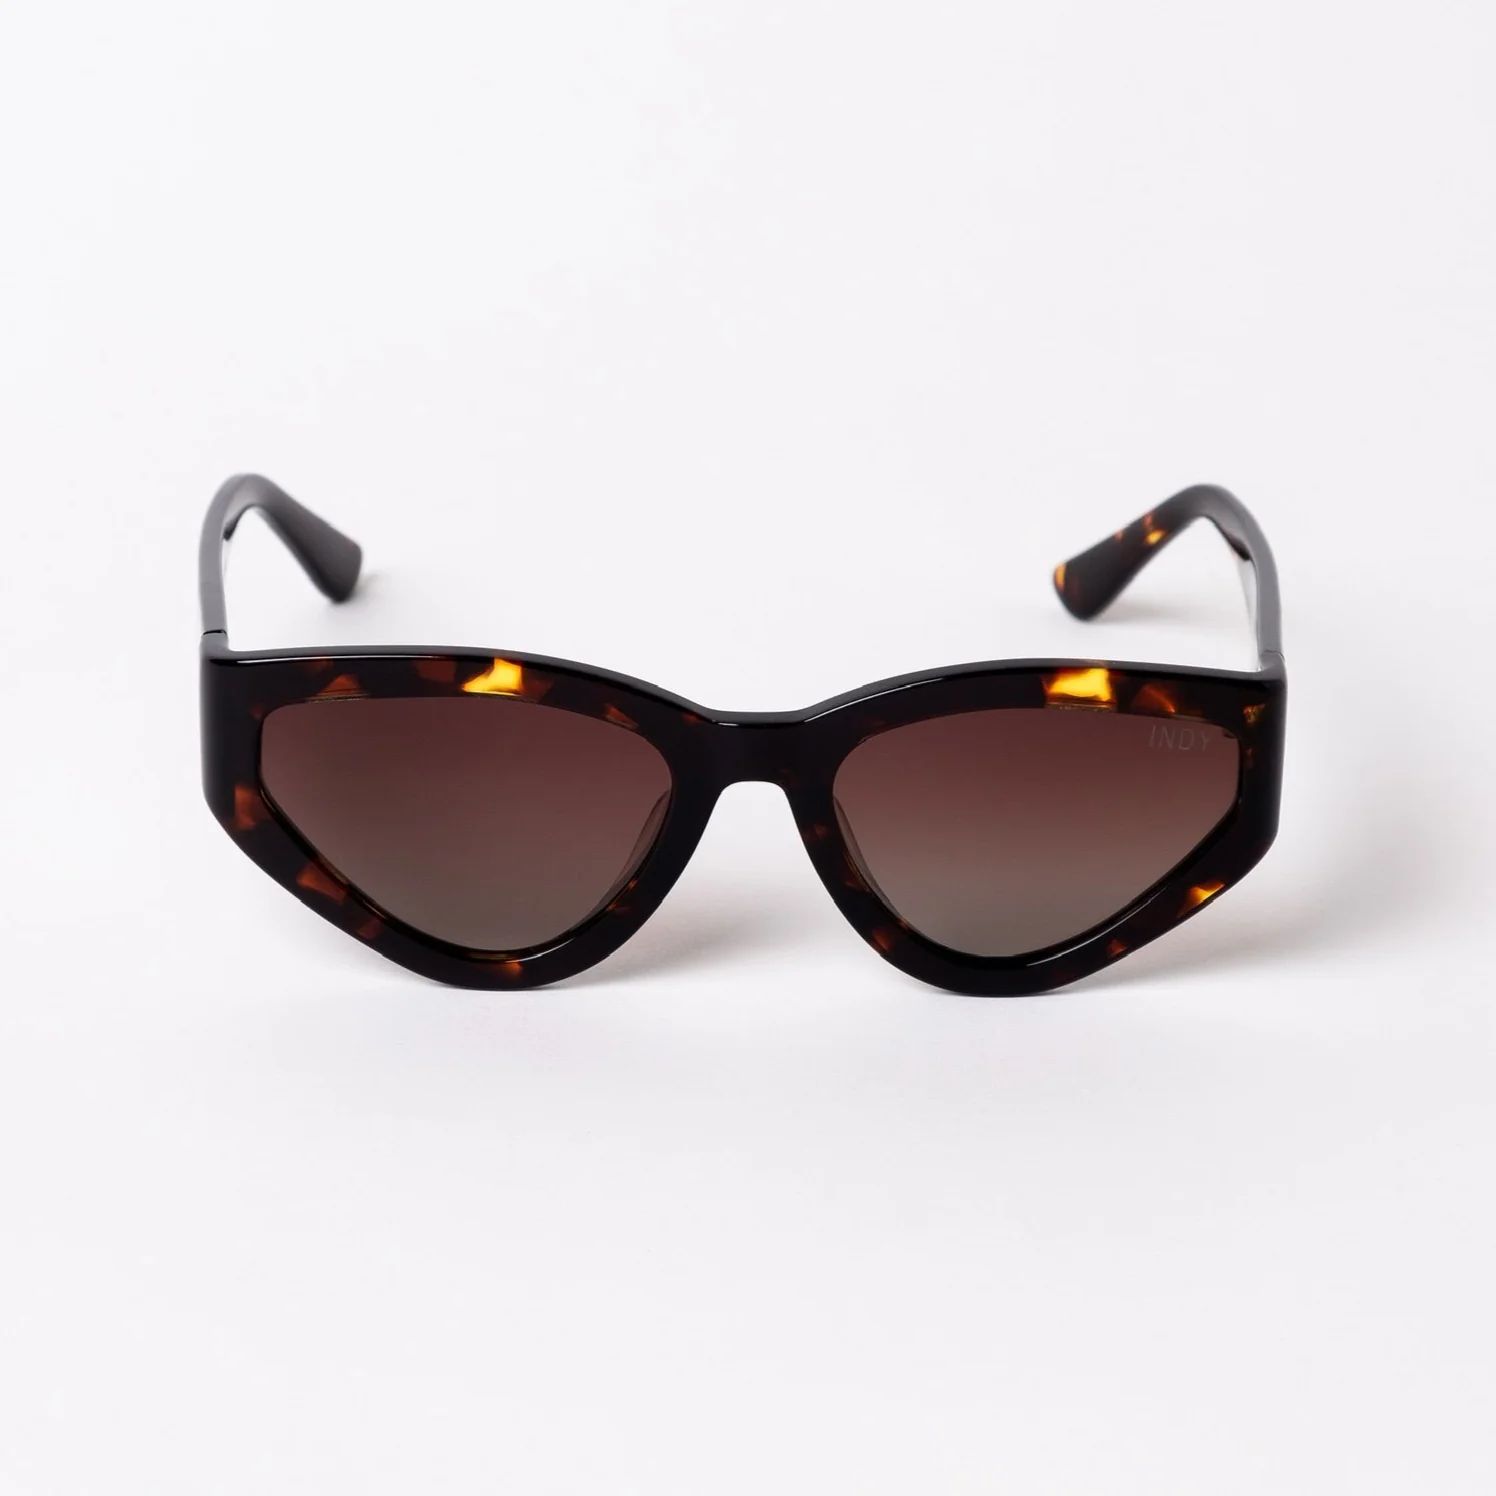 Nolita / Tortoise Shell - INDY Sunglasses | I.N.D.Y SUNGLASSES LLC